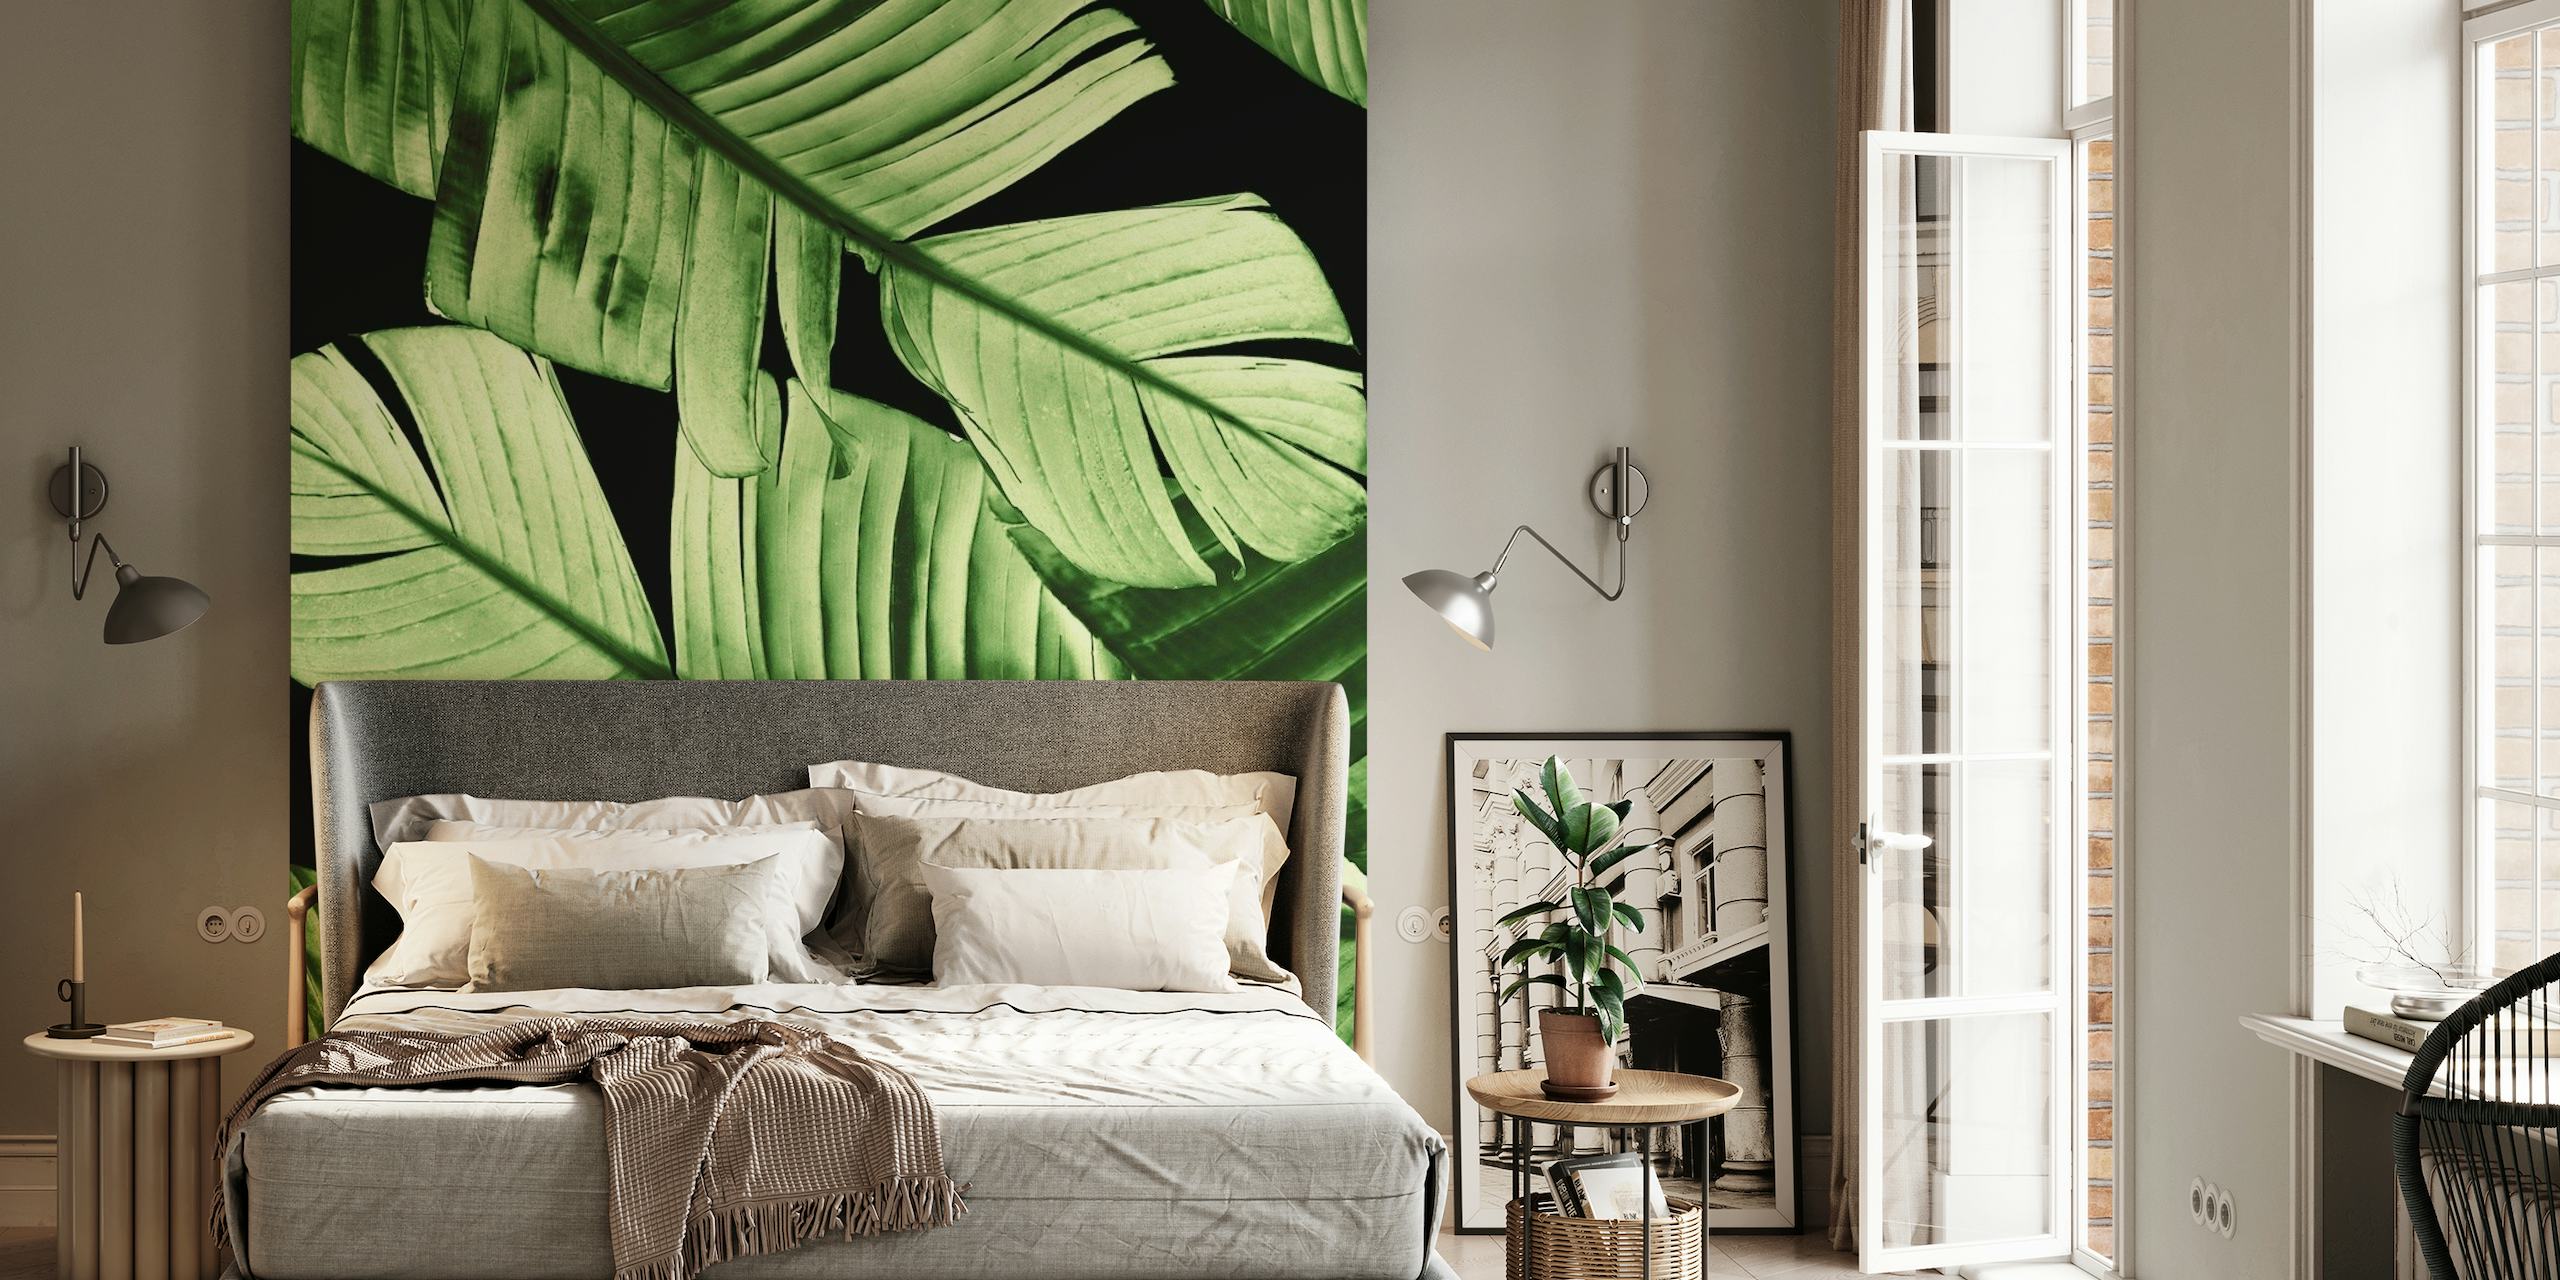 Tajanstveno i bujno lišće banane zidna slika u tamnozelenim tonovima